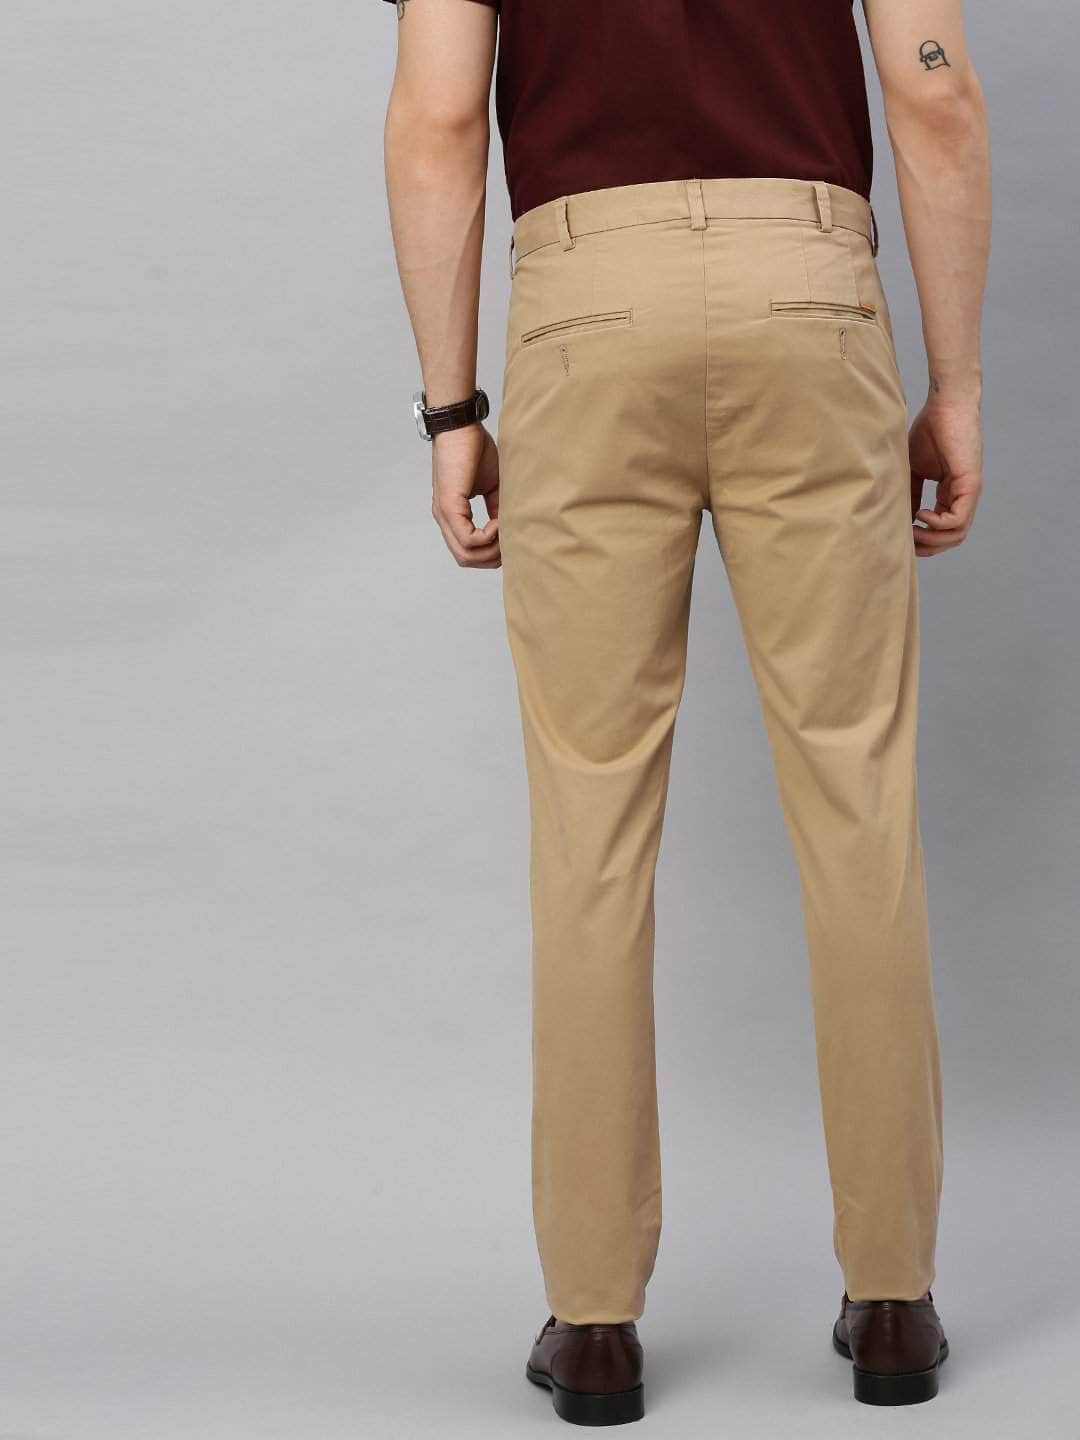 Khaki Cotton Pants | Casual Slim Cotton Pants – Cottonworld